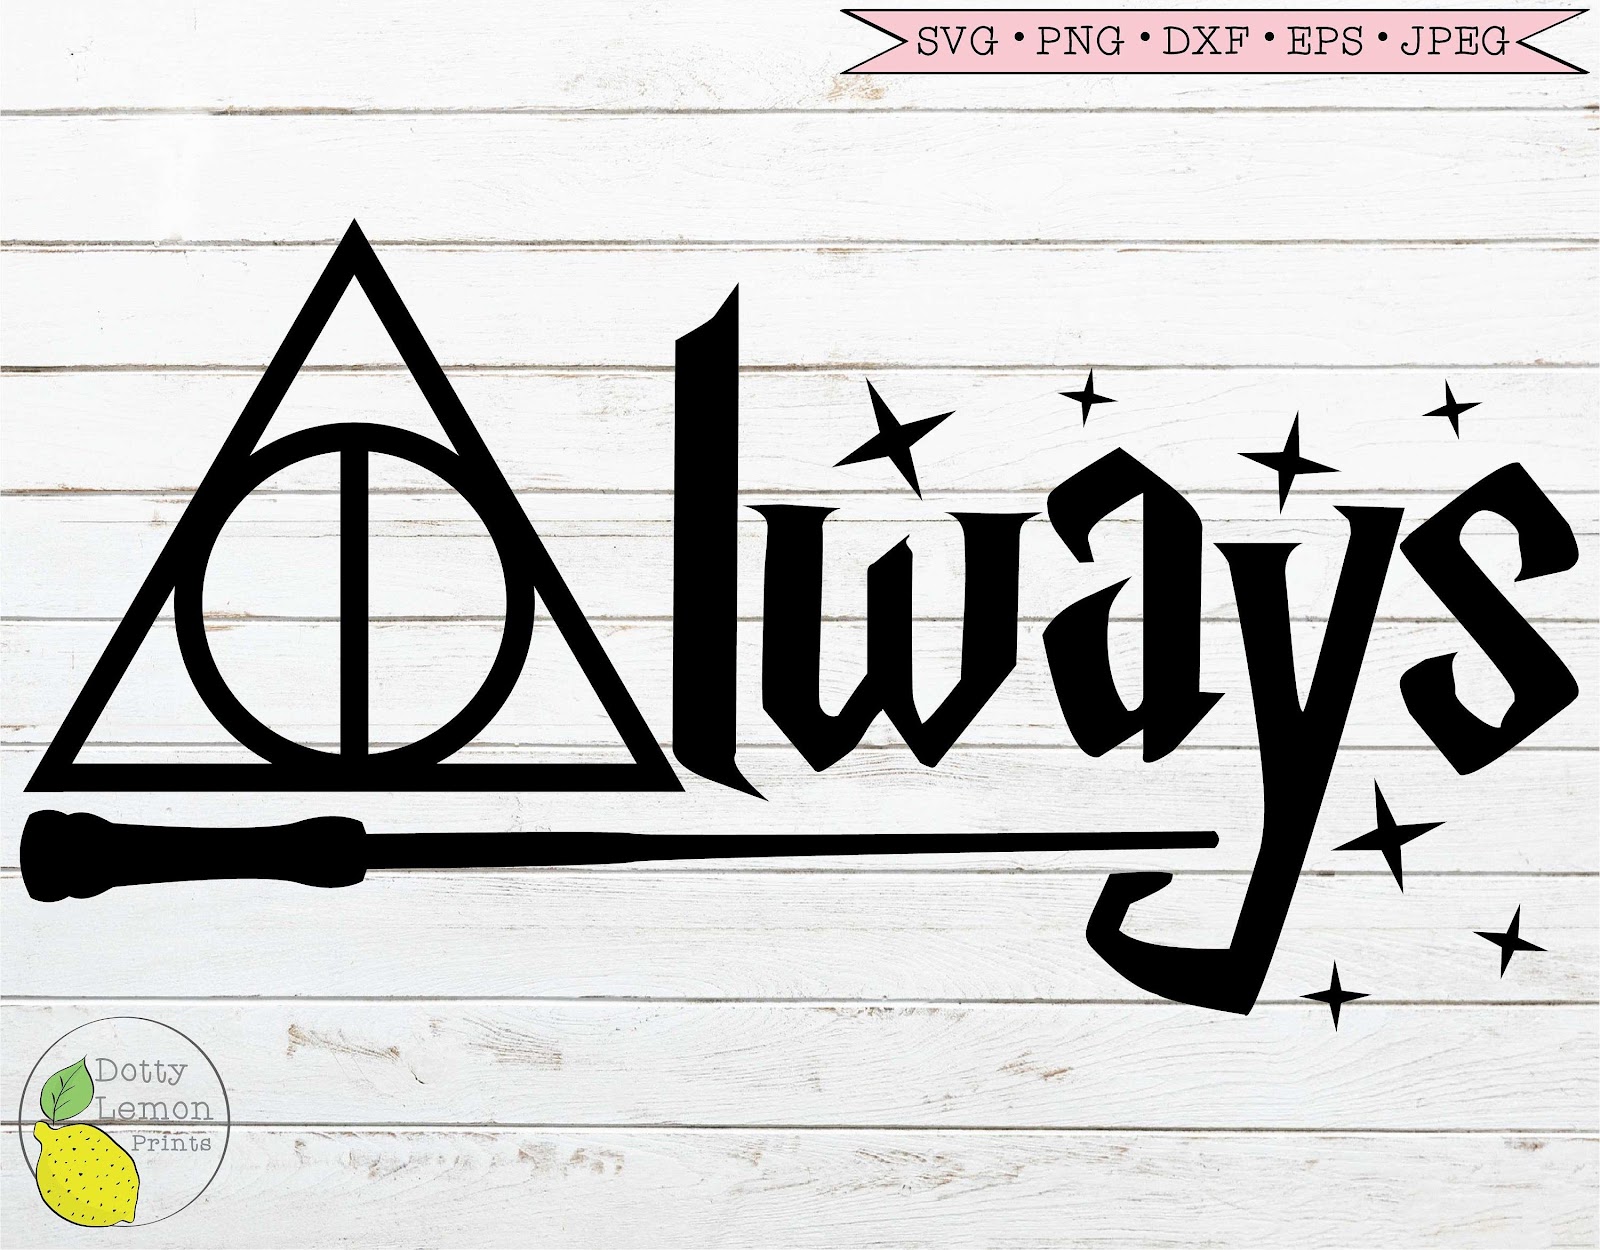 Free SVG Harry Potter Svg Always 8360+ Popular SVG File